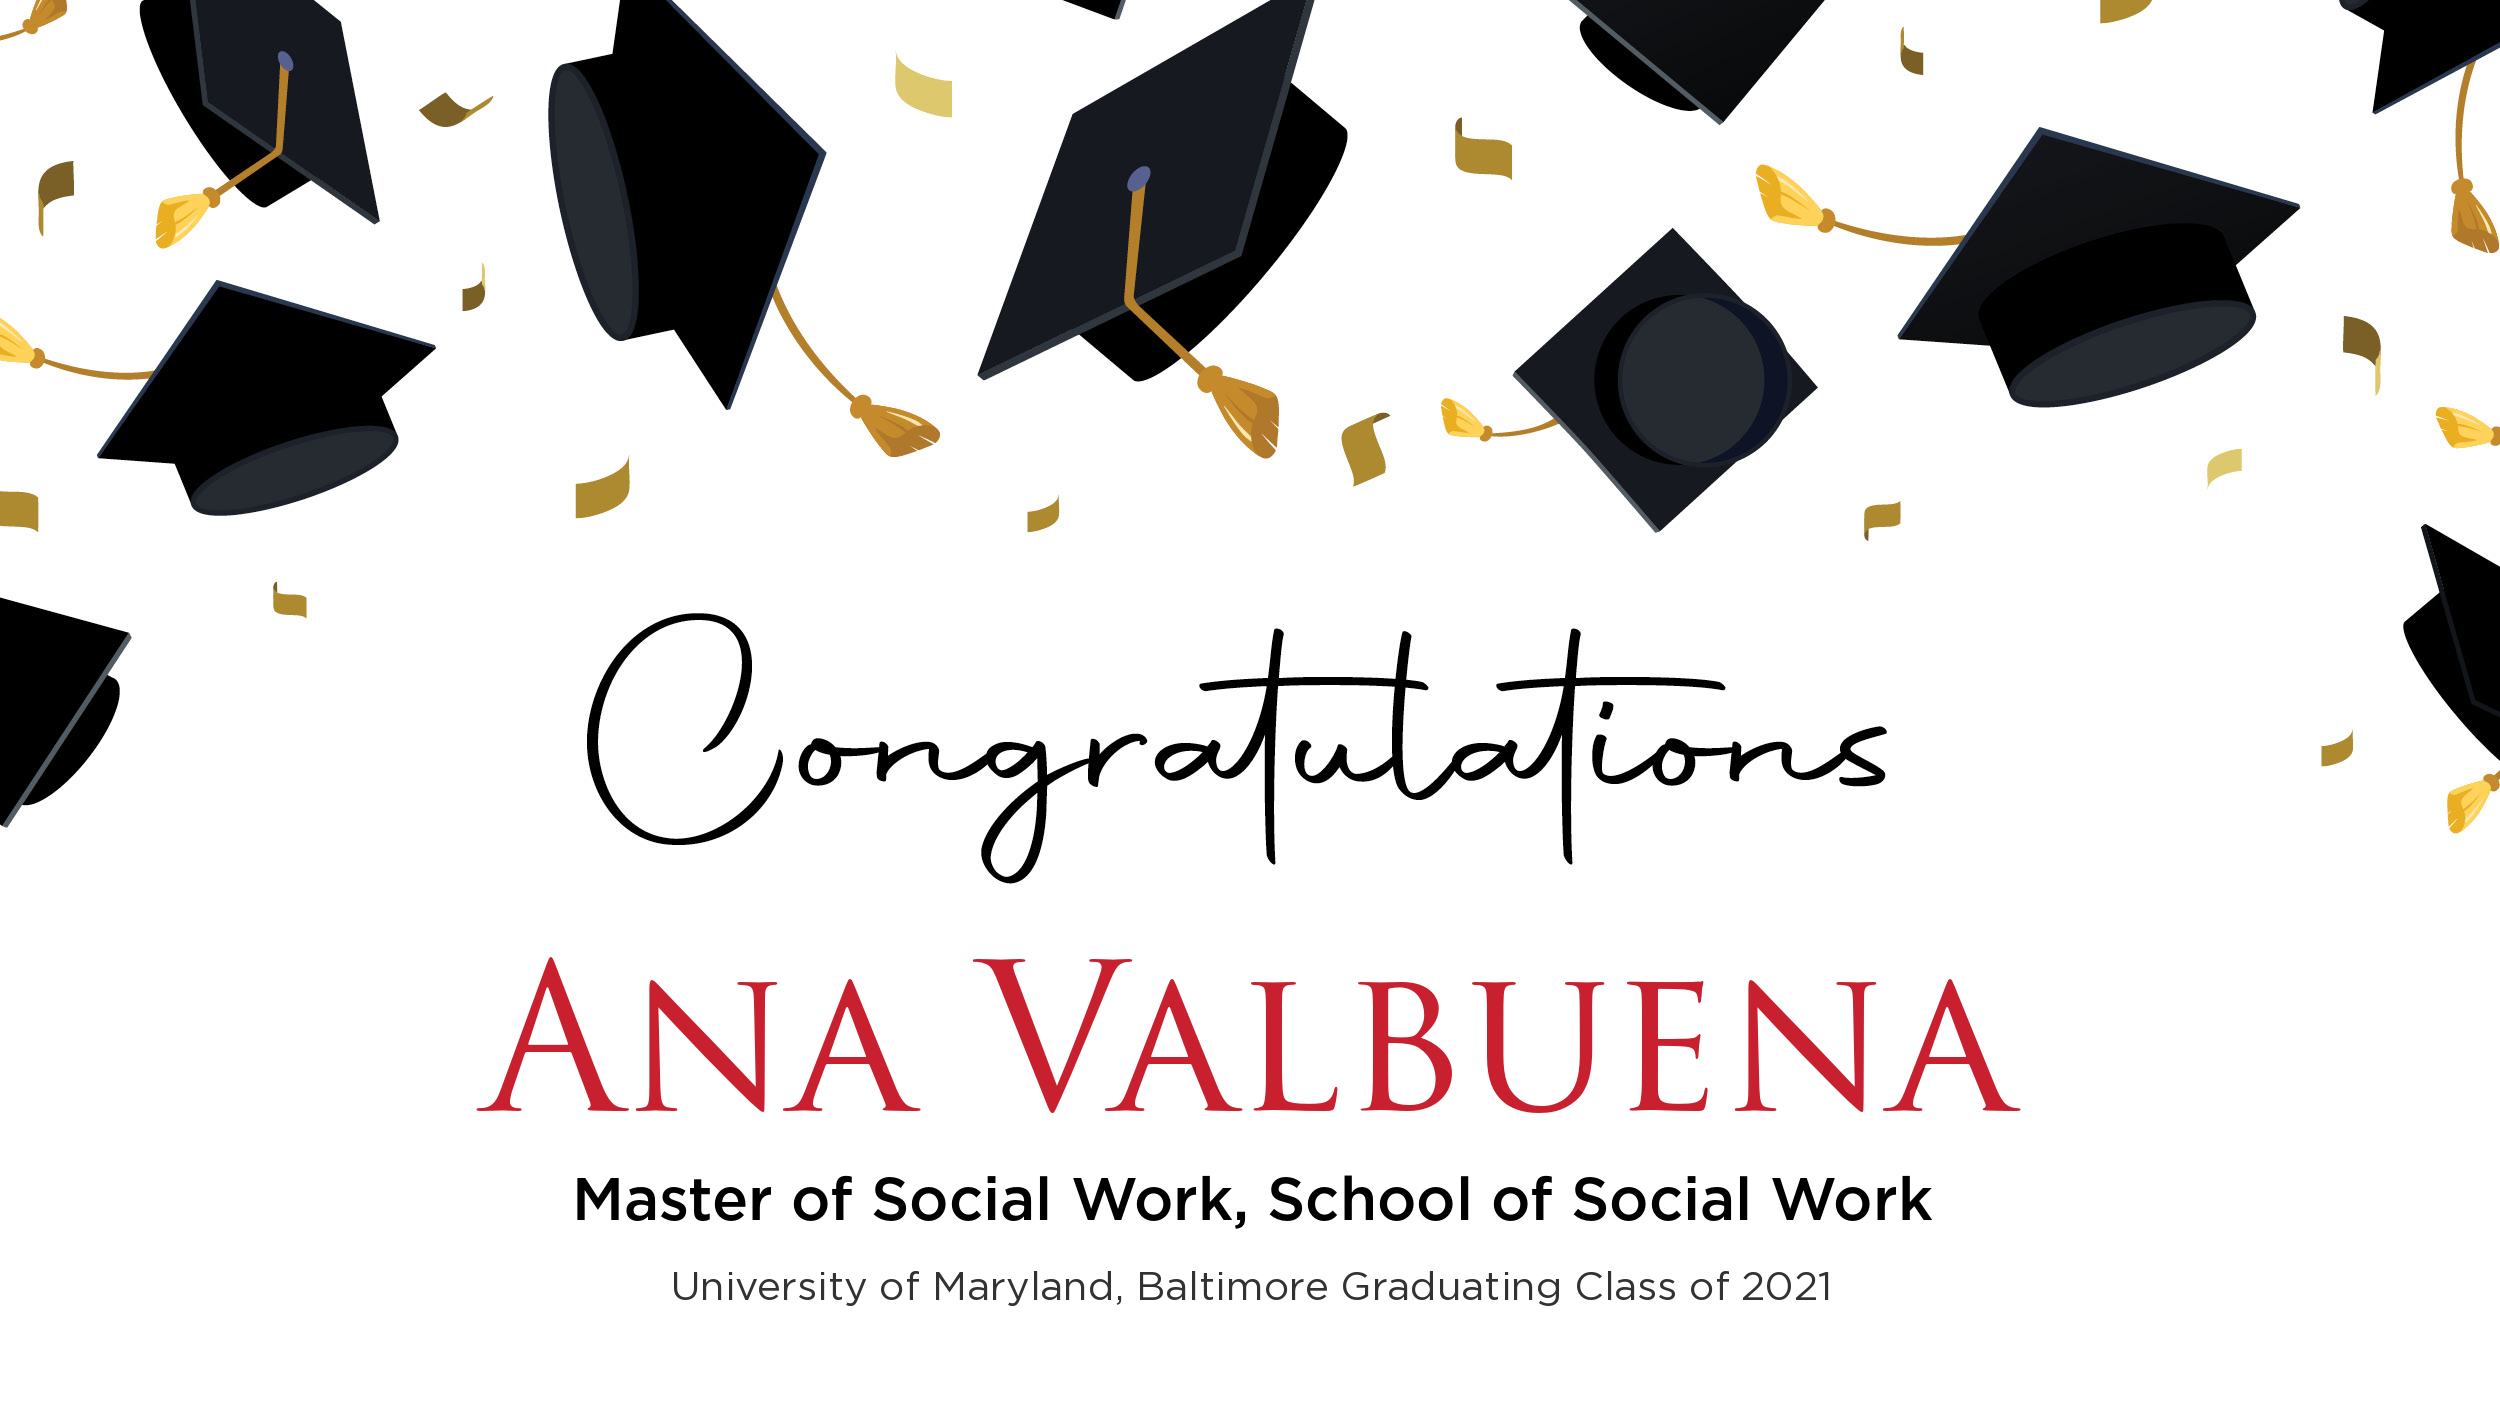 Congratulations Ana Valbuena, Master of Social Work